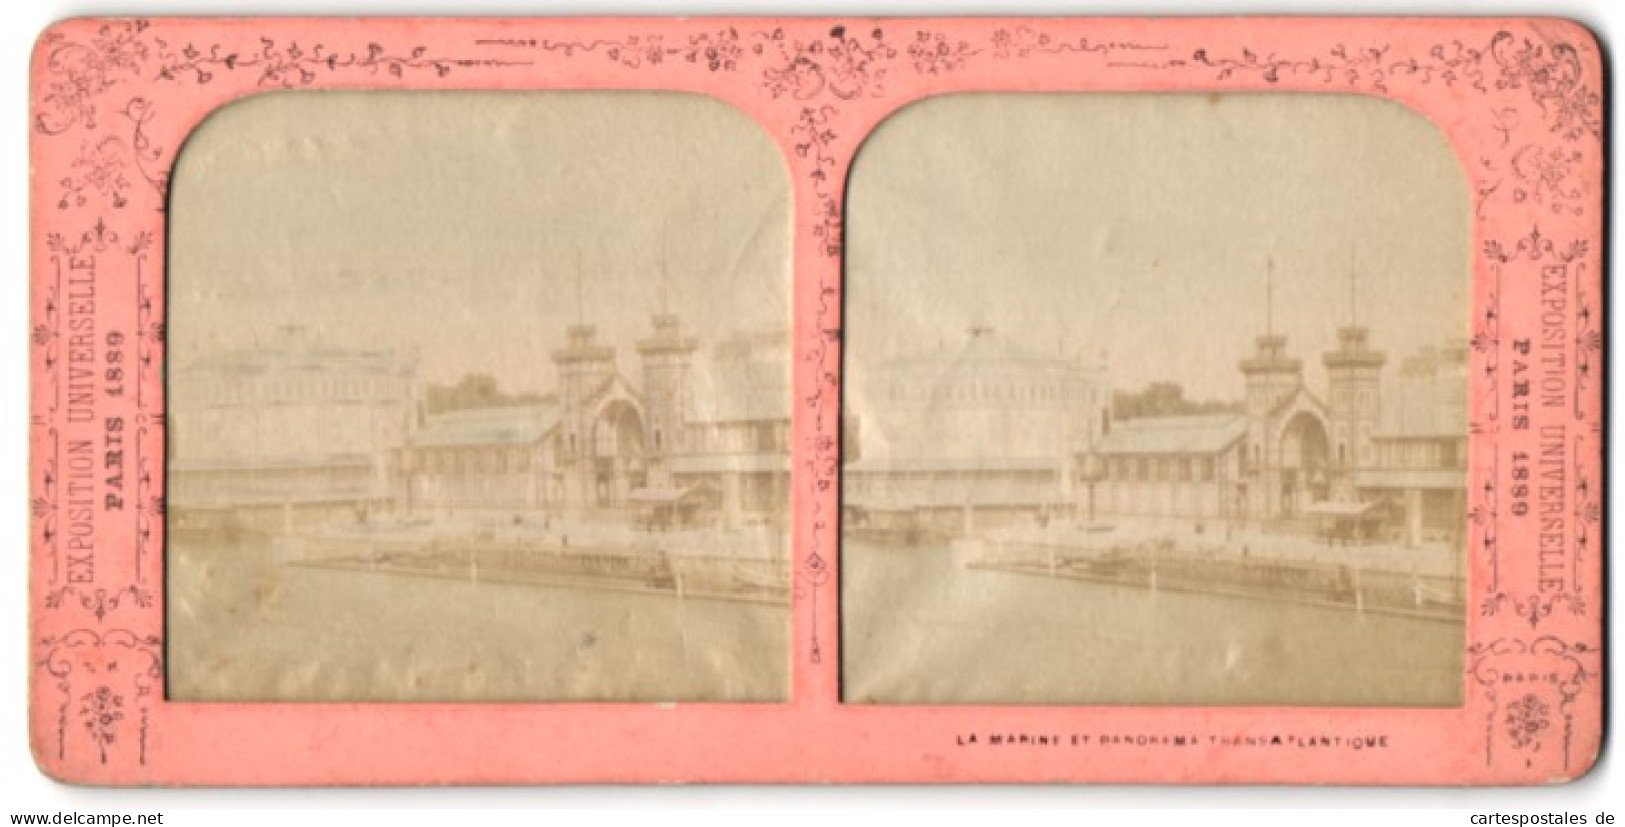 Stereo-Fotografie Fotograf Unbekannt, Ausstellung Pairs 1889, Exposition La Marine Et Panorama Transatlantique  - Photos Stéréoscopiques